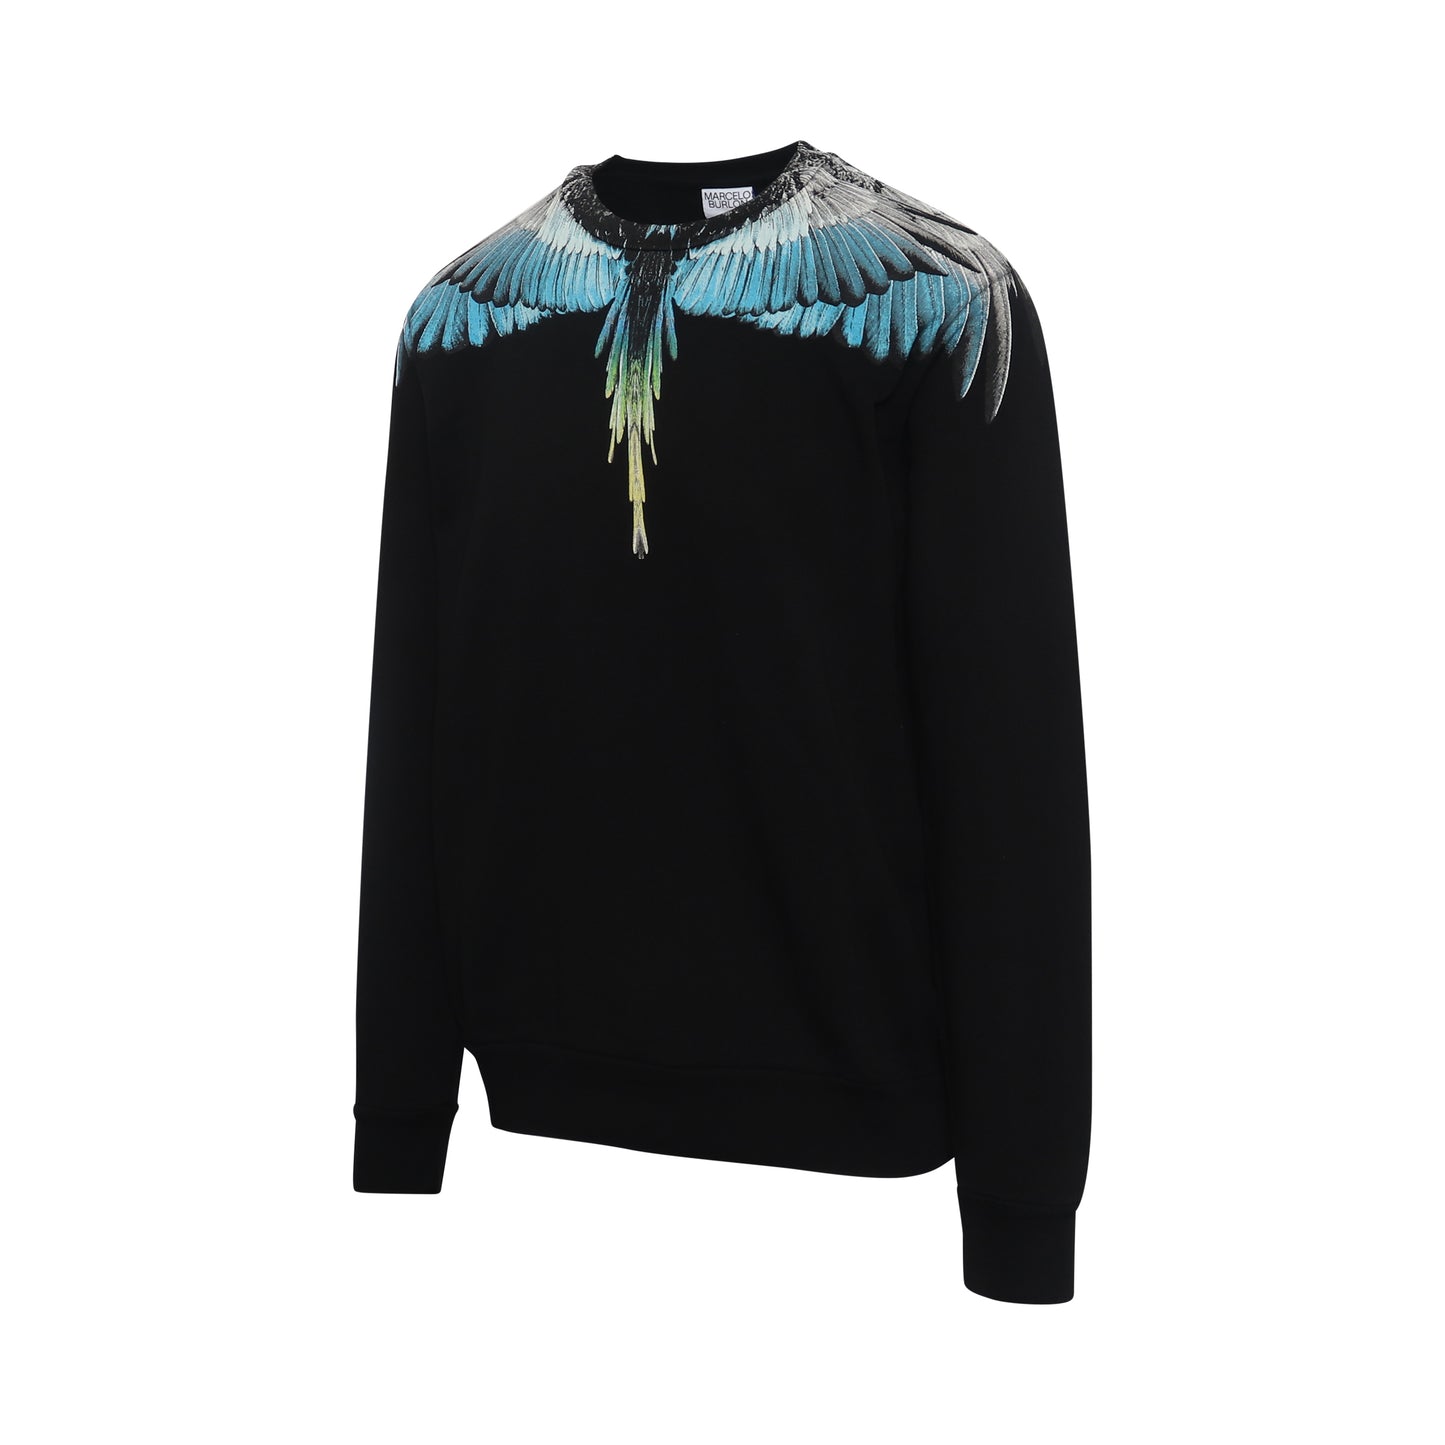 Classic Wings Print Sweatshirt in Black/Blue